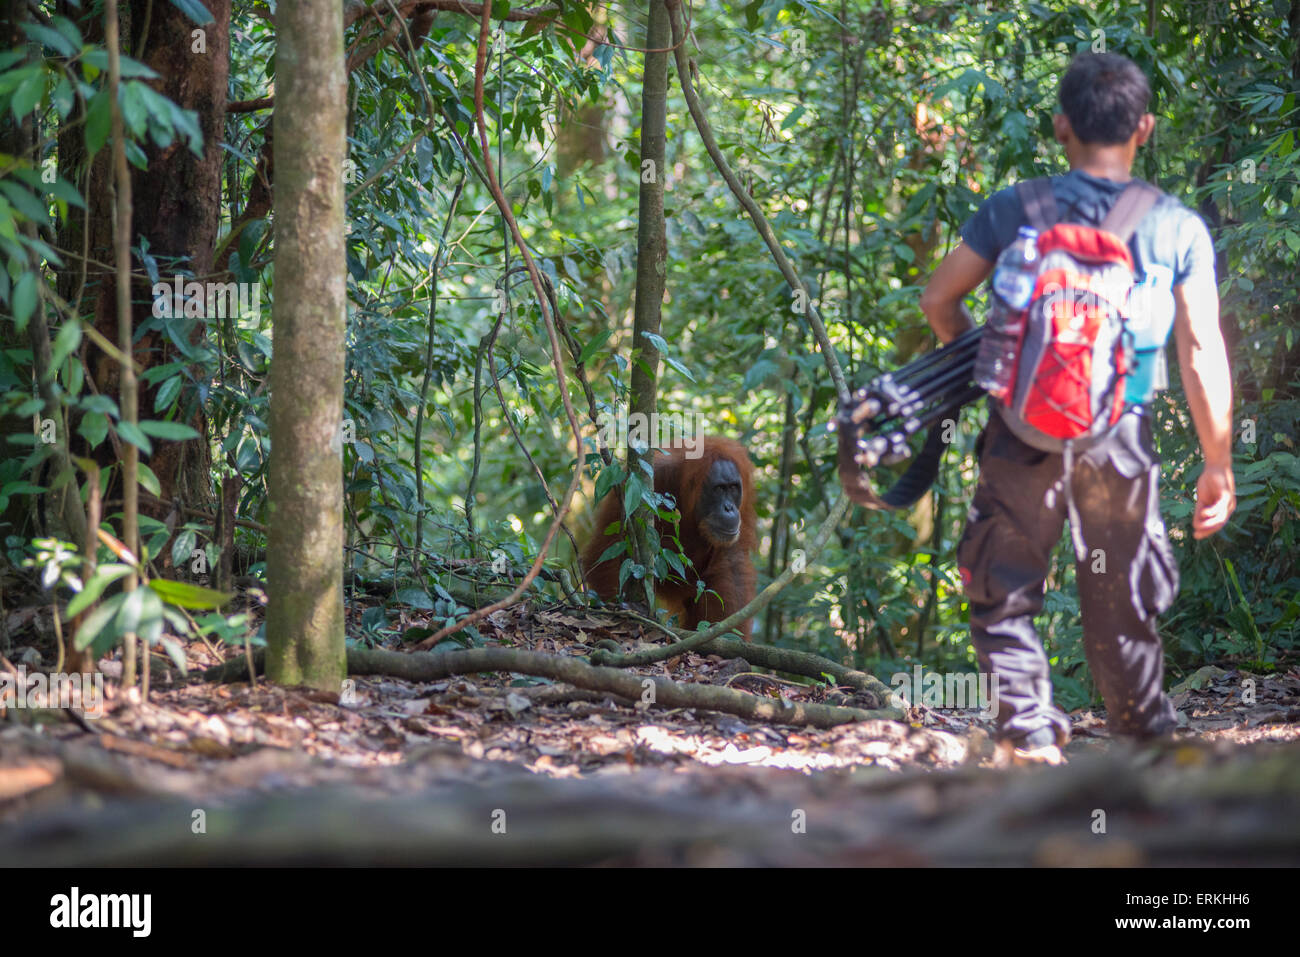 L'orang-outan, Pongo abelii Sumatra, parc national de Gunung Leuser, nord de Sumatra, en Indonésie. Banque D'Images